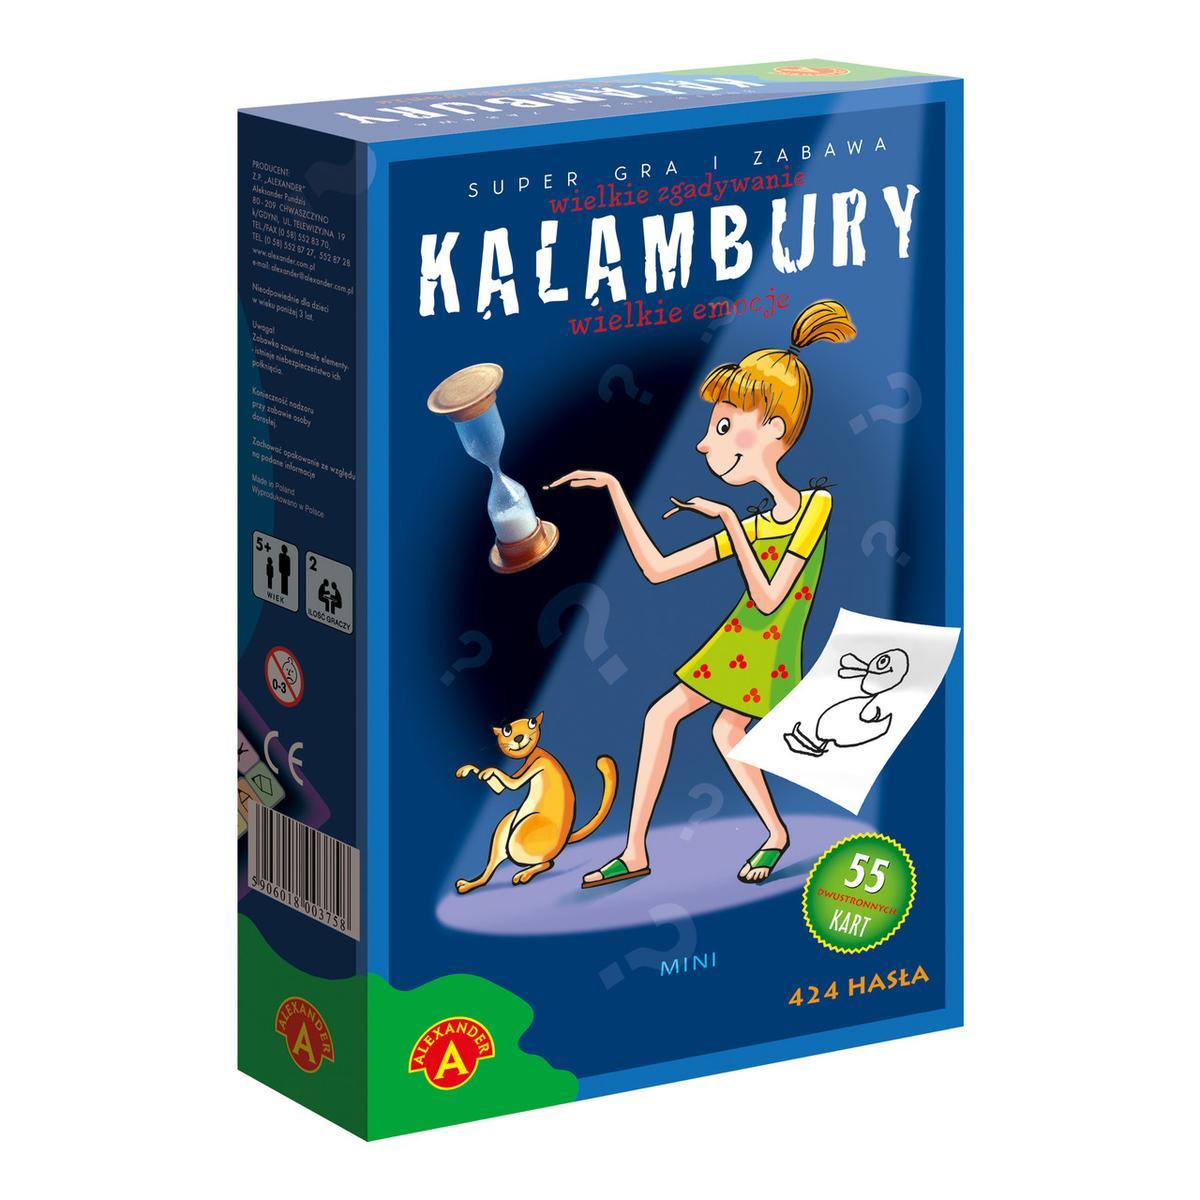 ALEXANDER Kalambury mini gra towarzyska 7+ 1 Full Screen